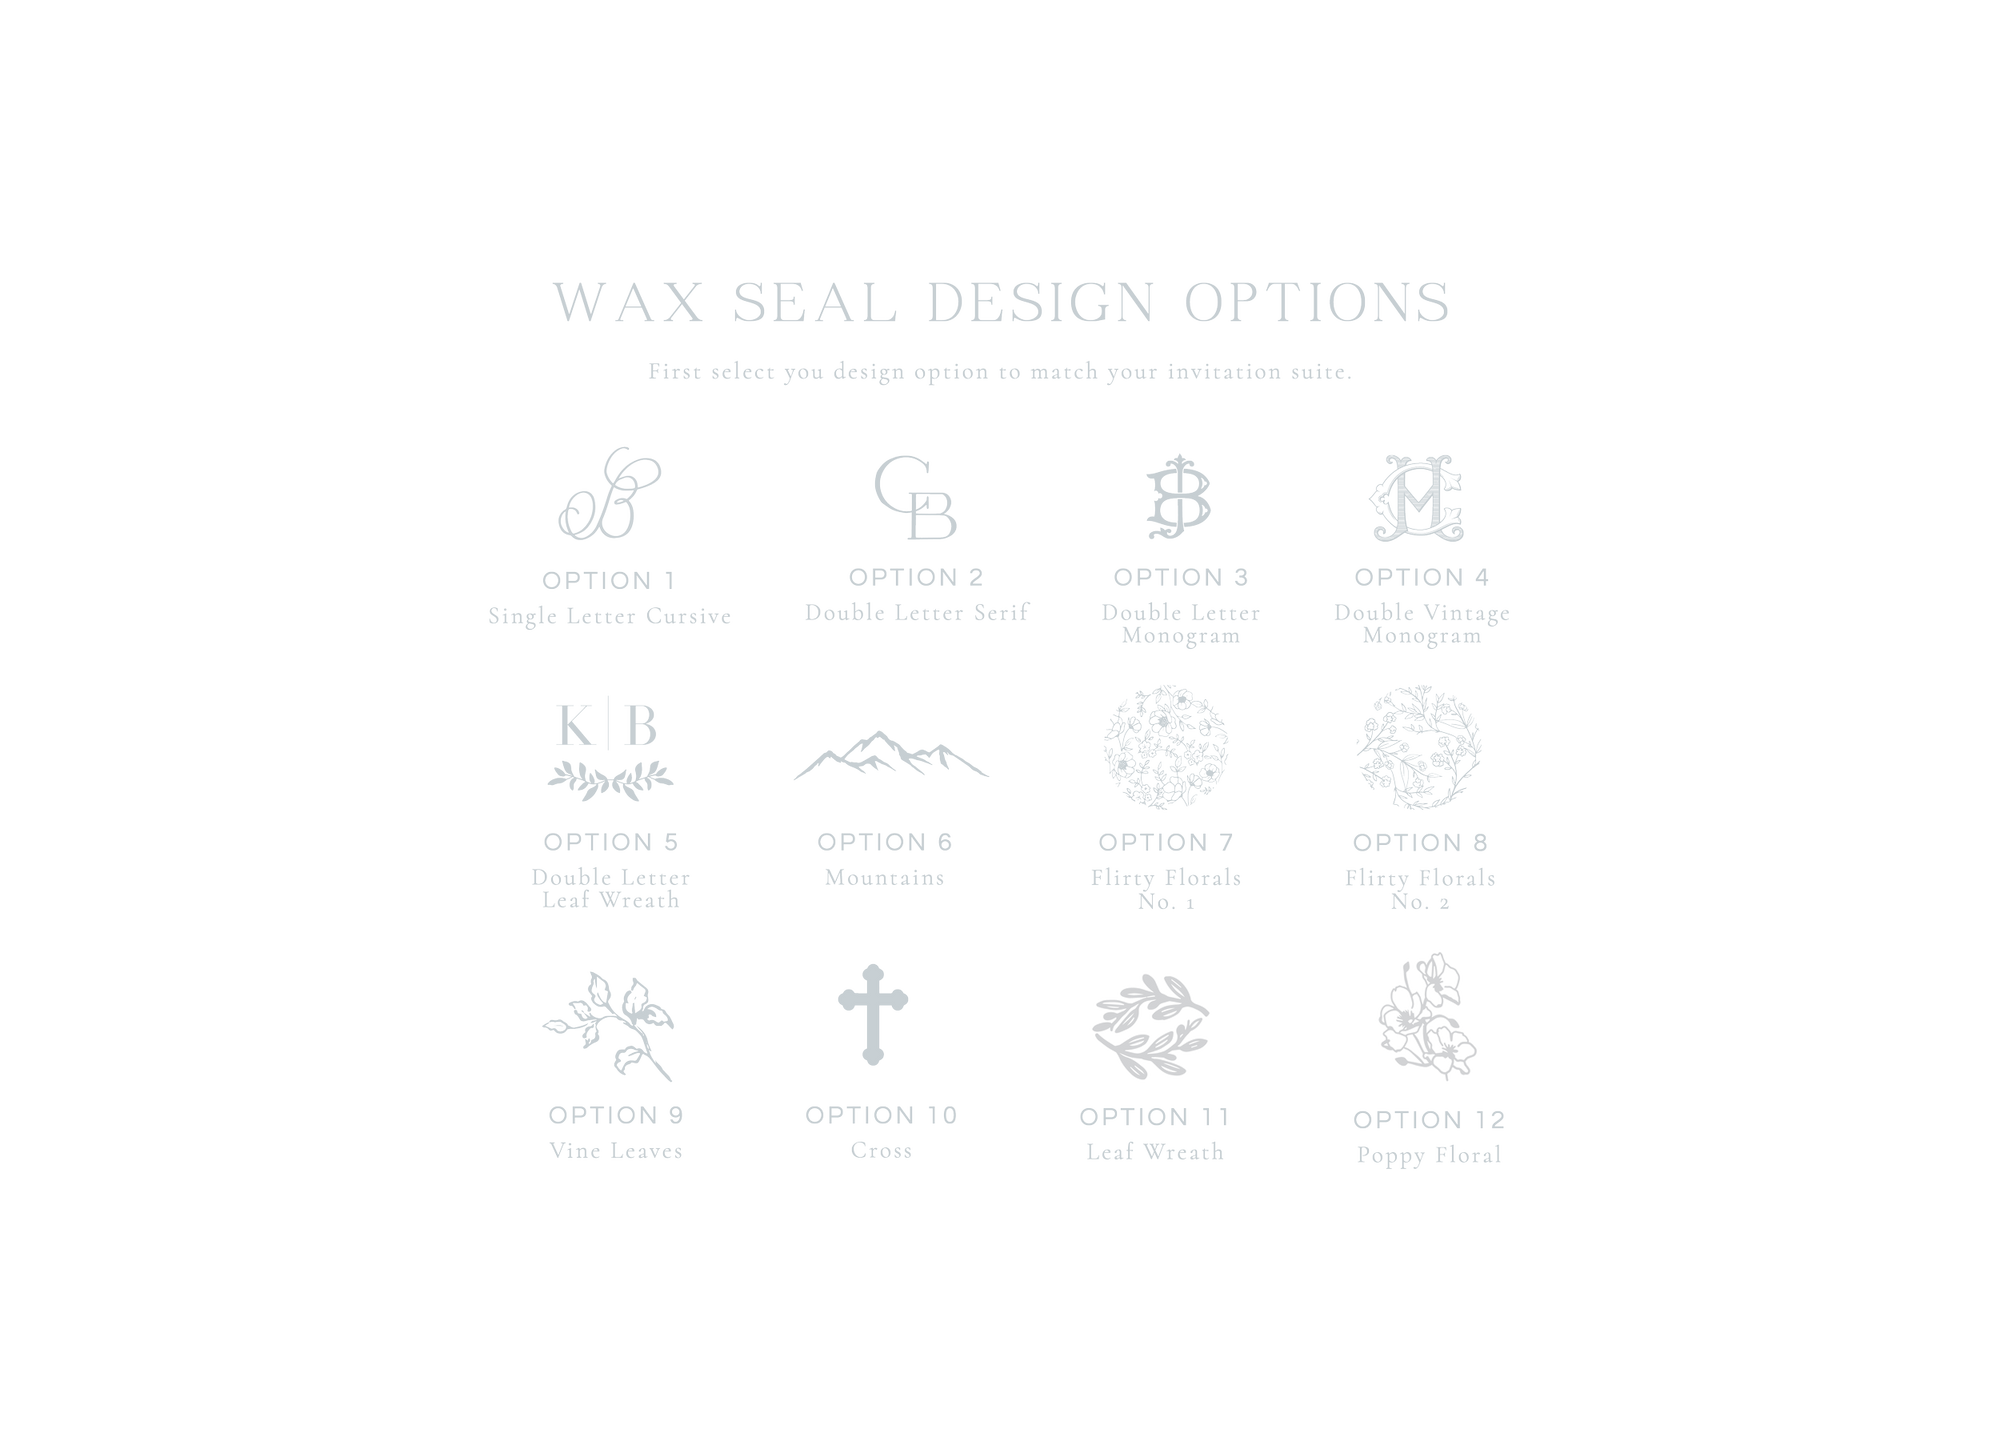 Wax Seals | 1 inch Circle Self-Adhesive Wax Seals